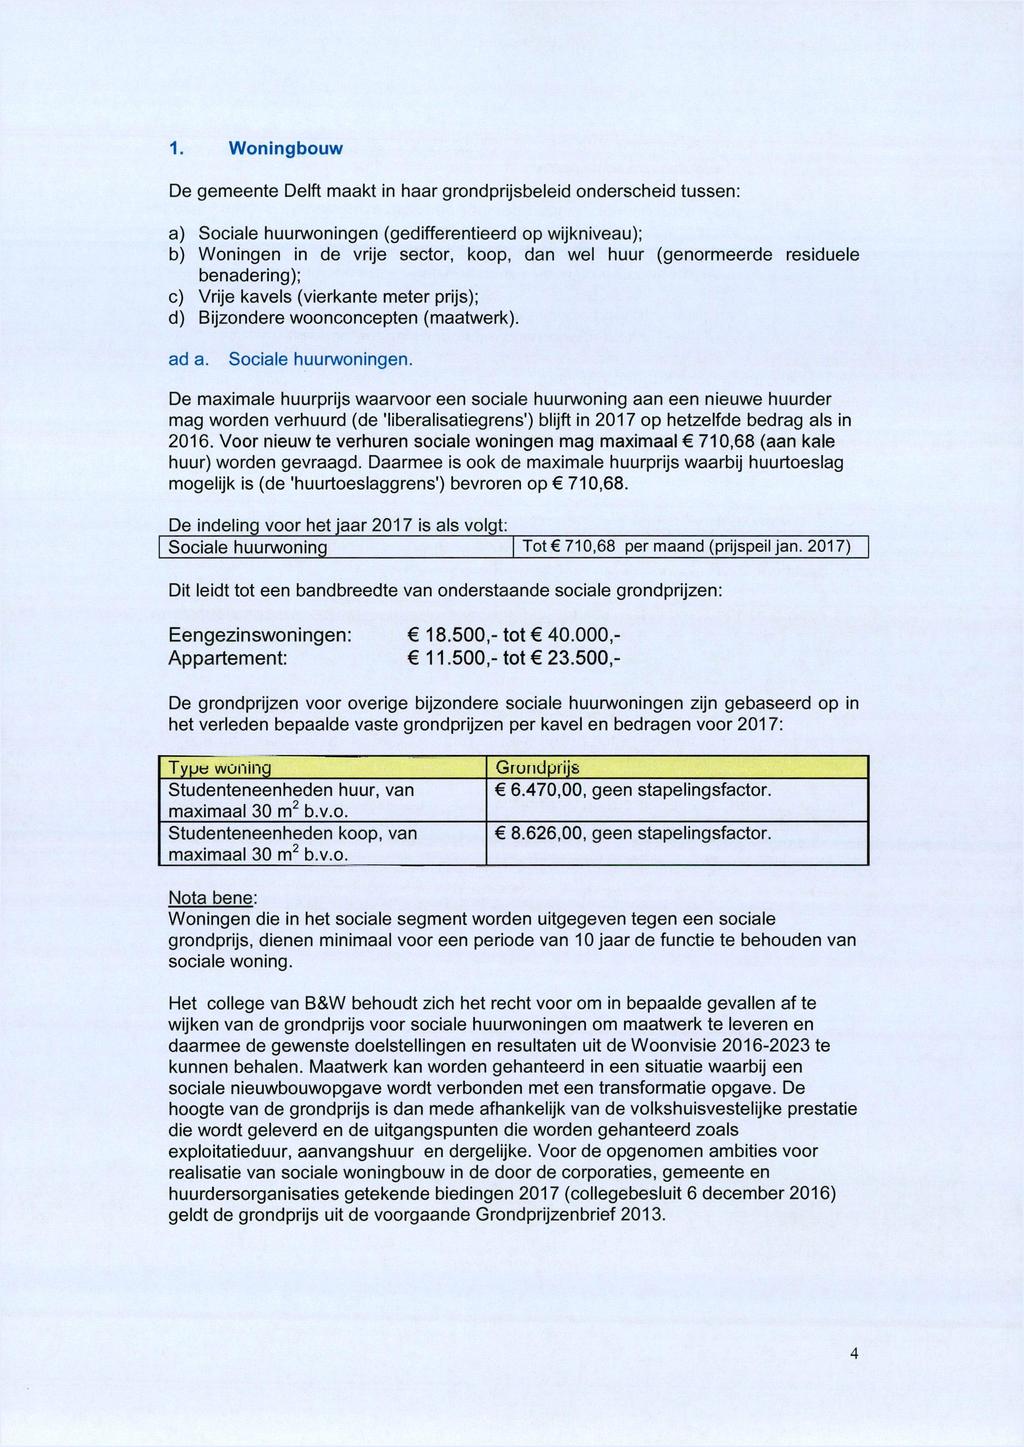 1. Woningbouw De gemeente Delft maakt in haar grondprijsbeleid onderscheid tussen: a) Sociale huurwoningen (gedifferentieerd op wijkniveau); b) Woningen in de vrije sector, koop, dan wel huur